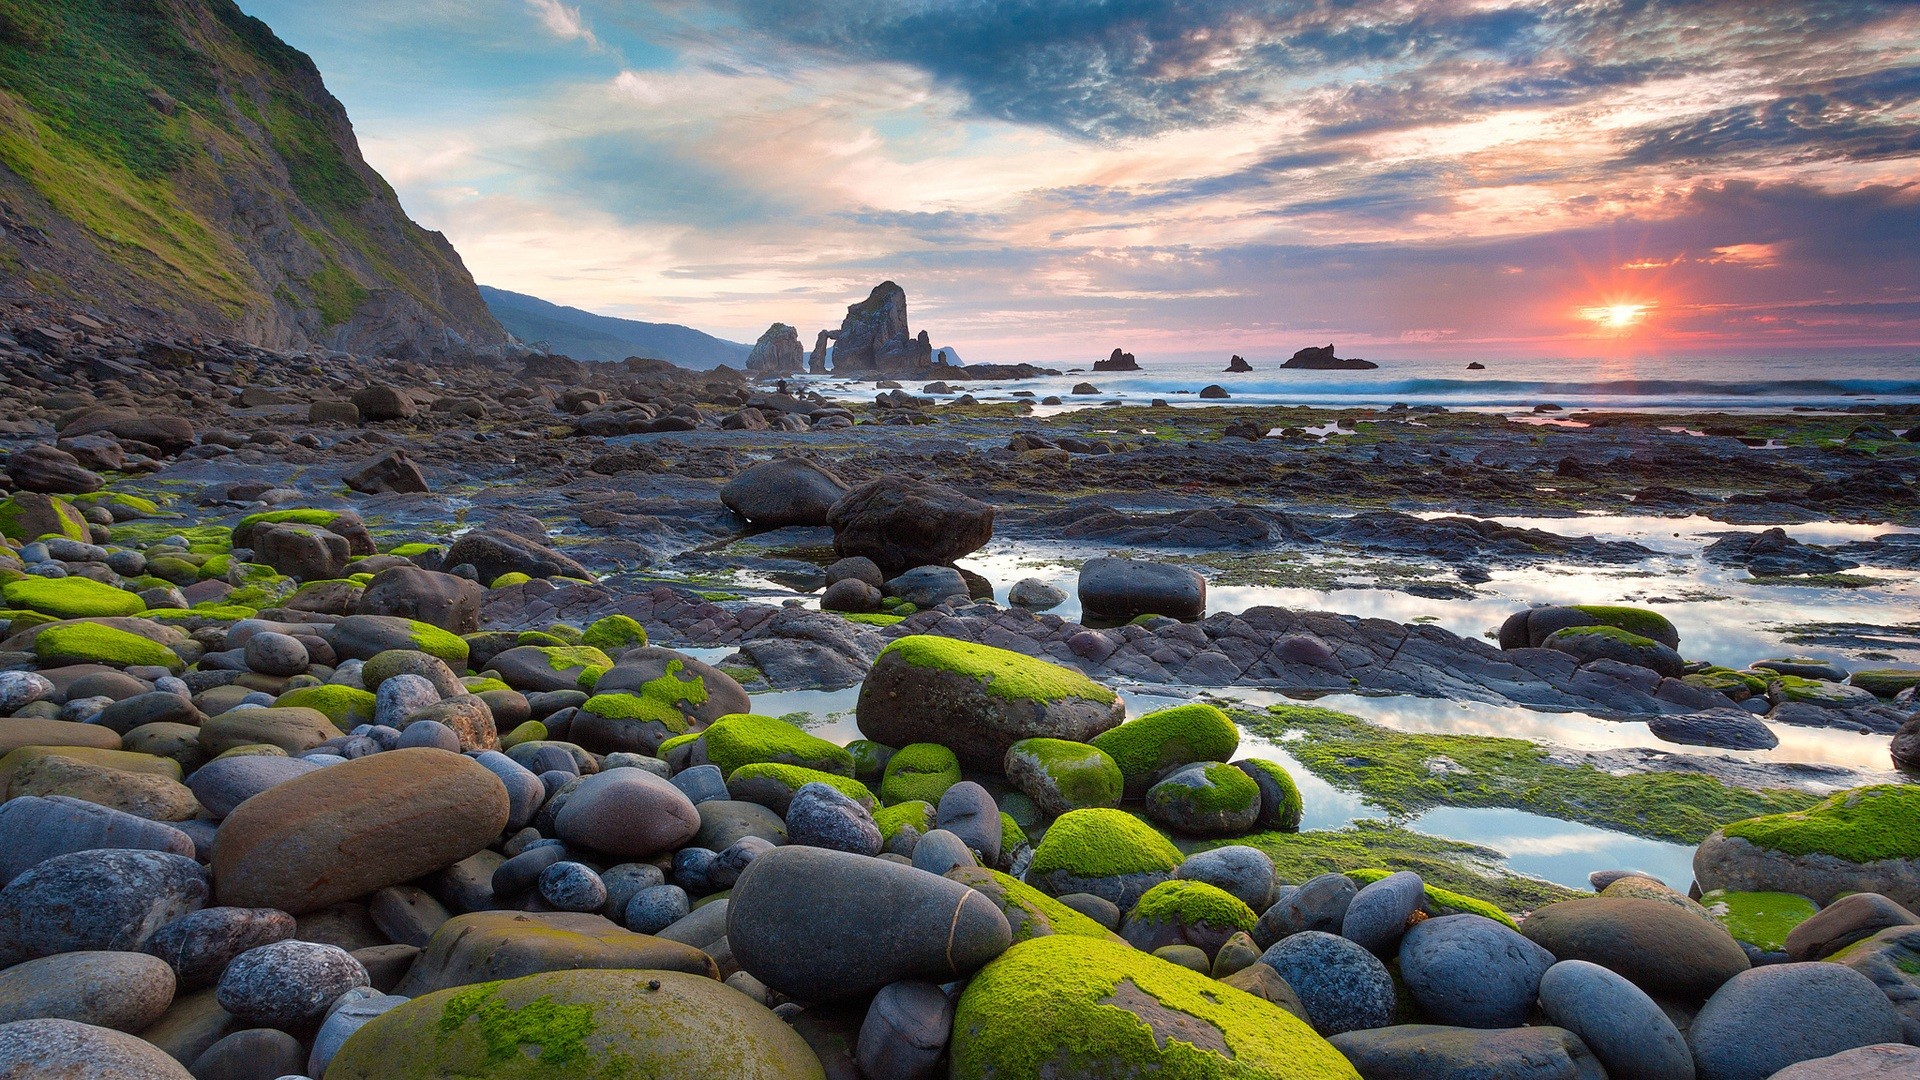 rocks, Stones, Sunset, Sunlight, Beach, Ocean, Moss, Landscape Wallpaper